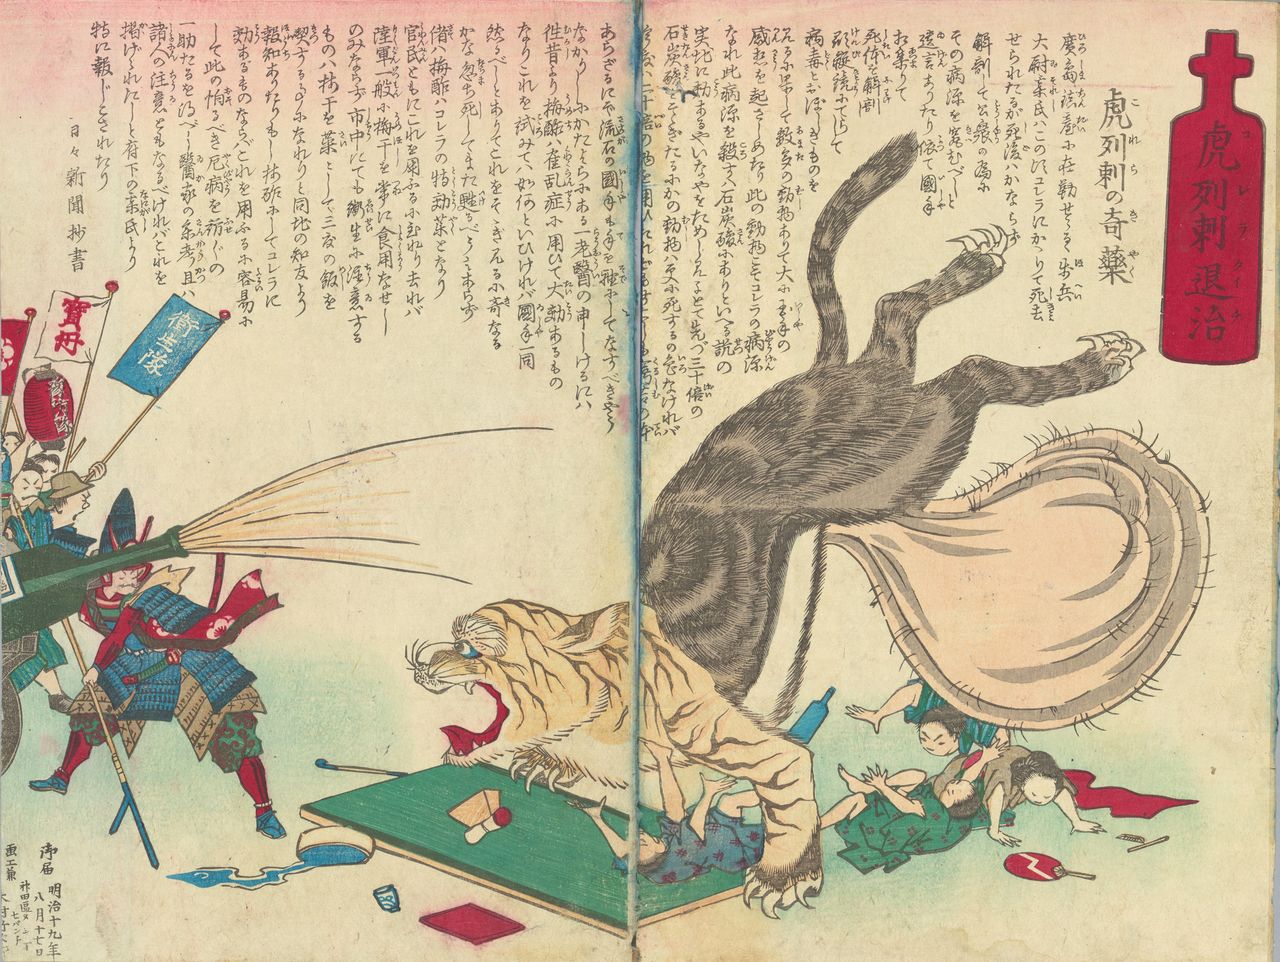 Grabado a color Korera taiji (“Exterminando el cólera”), colección del Archivo Metropolitano de Tokio. En el texto se afirma que el vinagre de ciruela es efectivo contra el mal.   